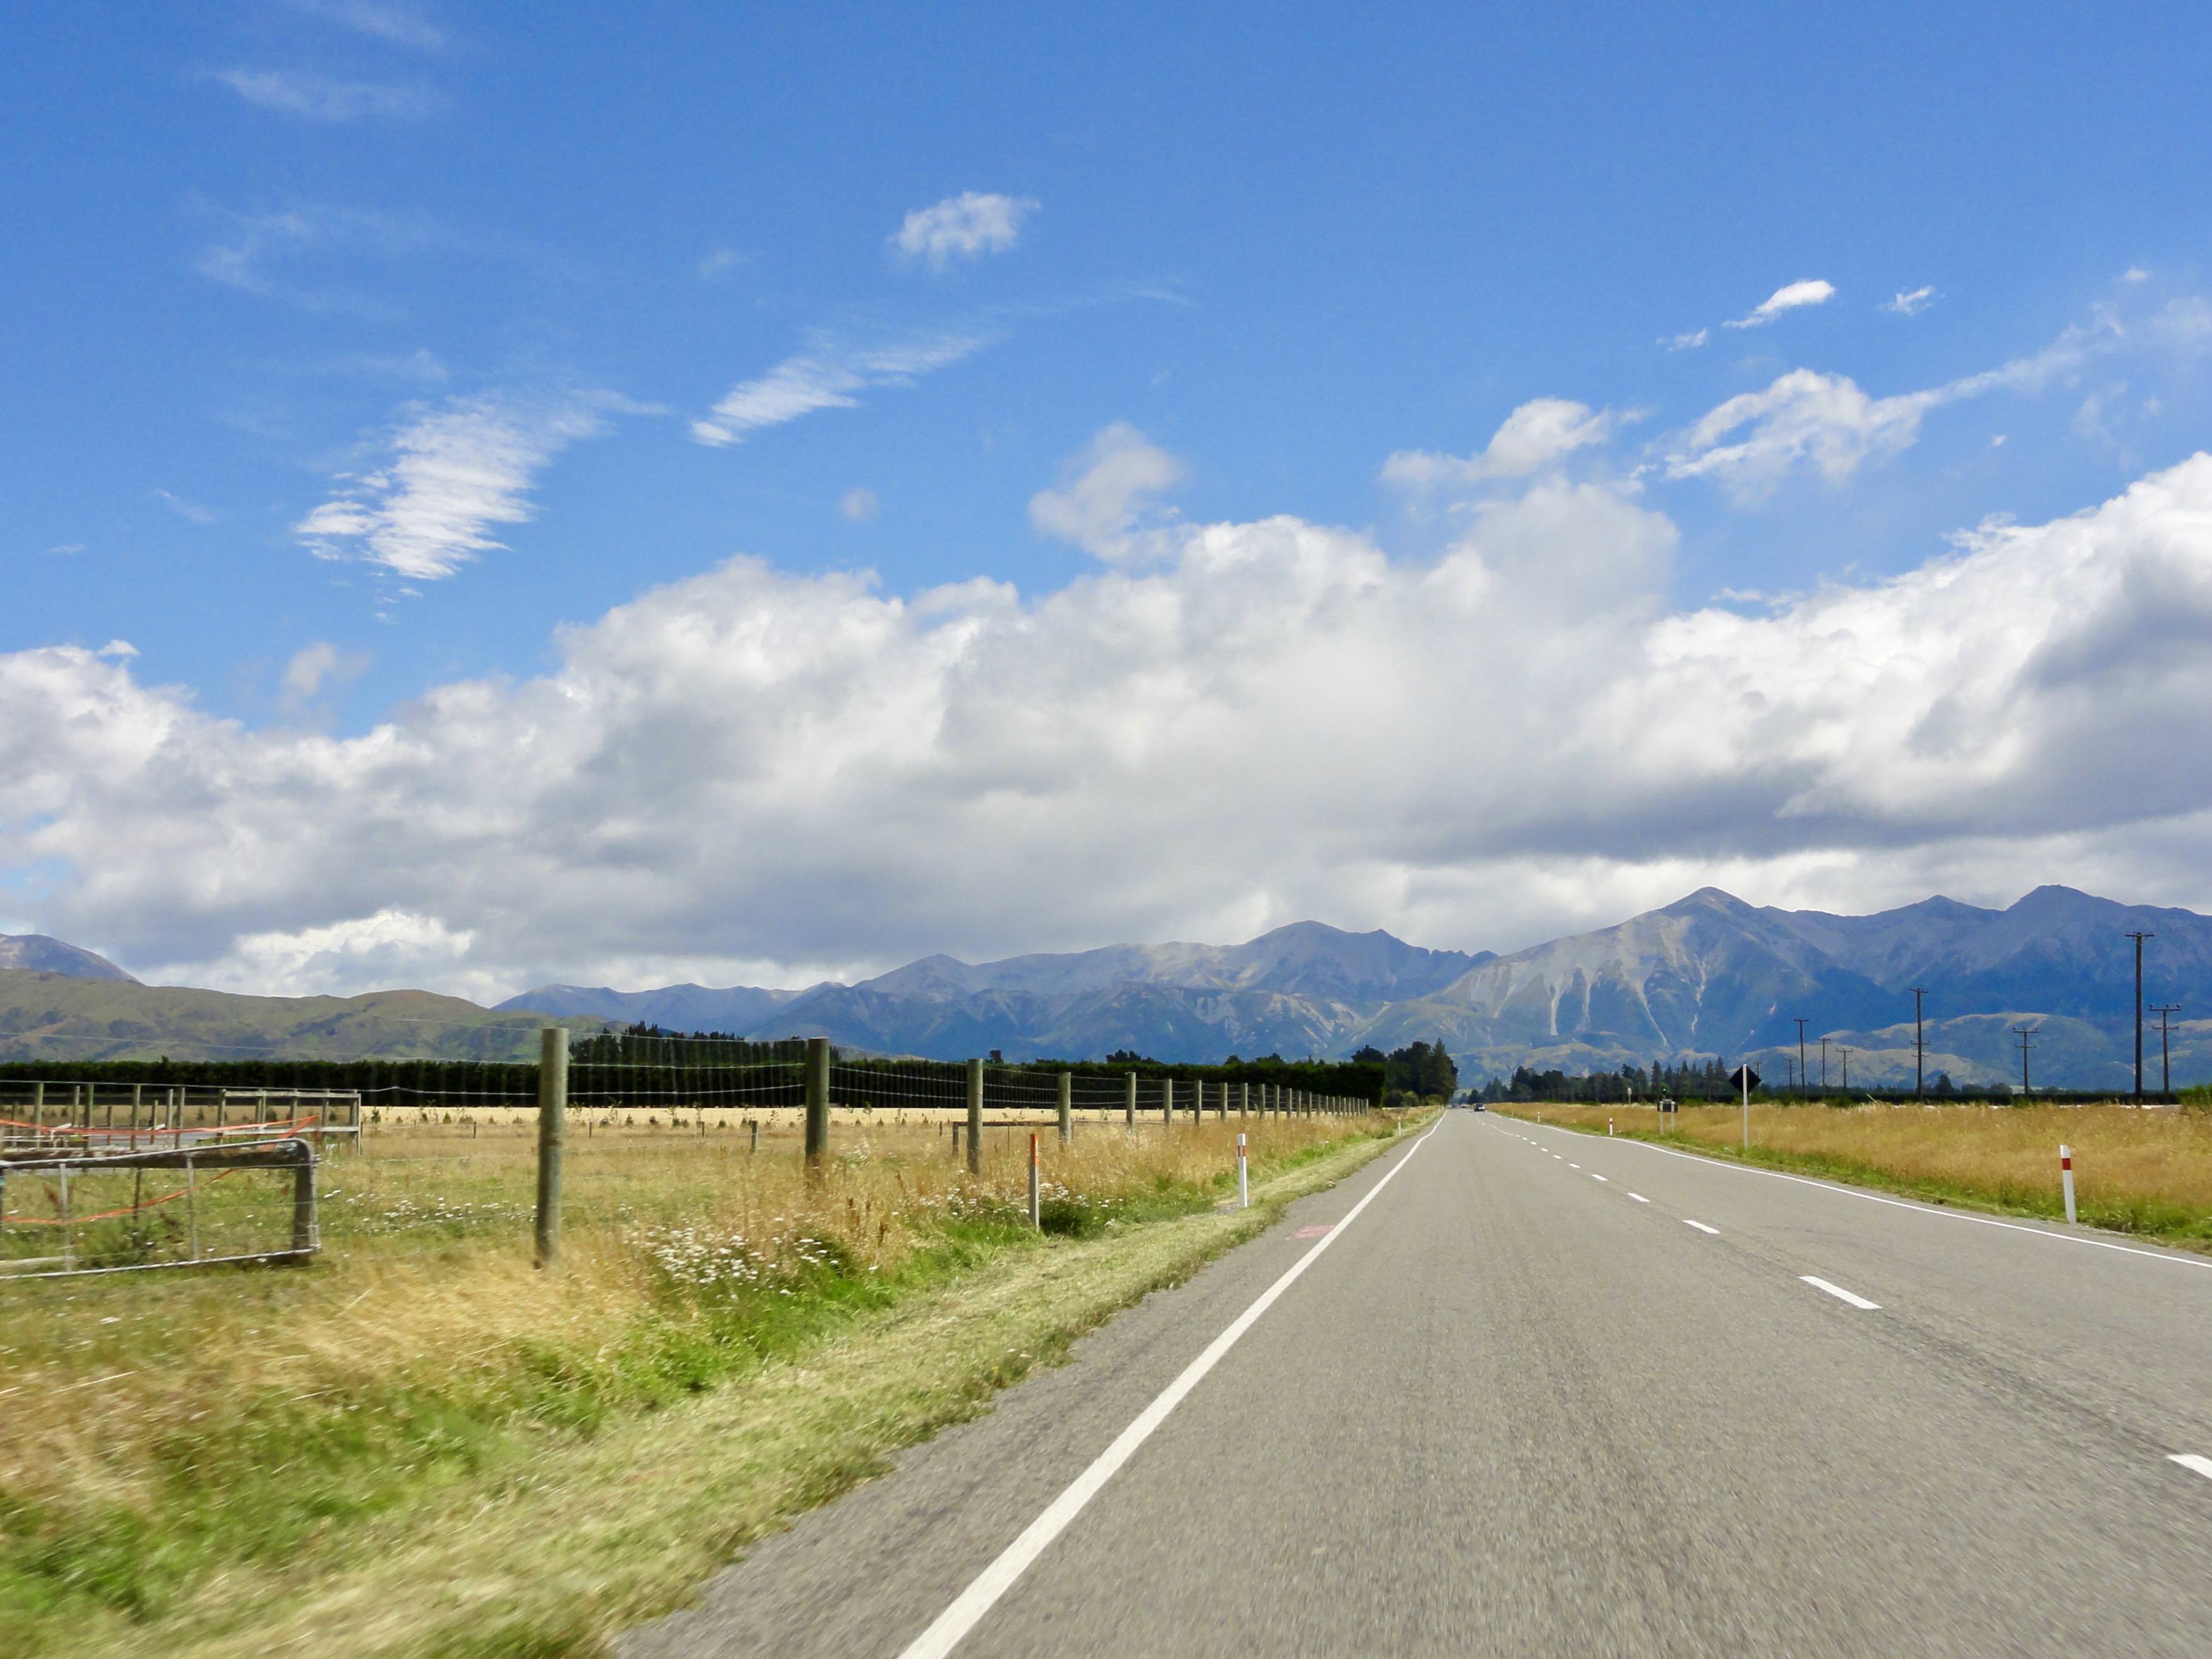 NZ road trip